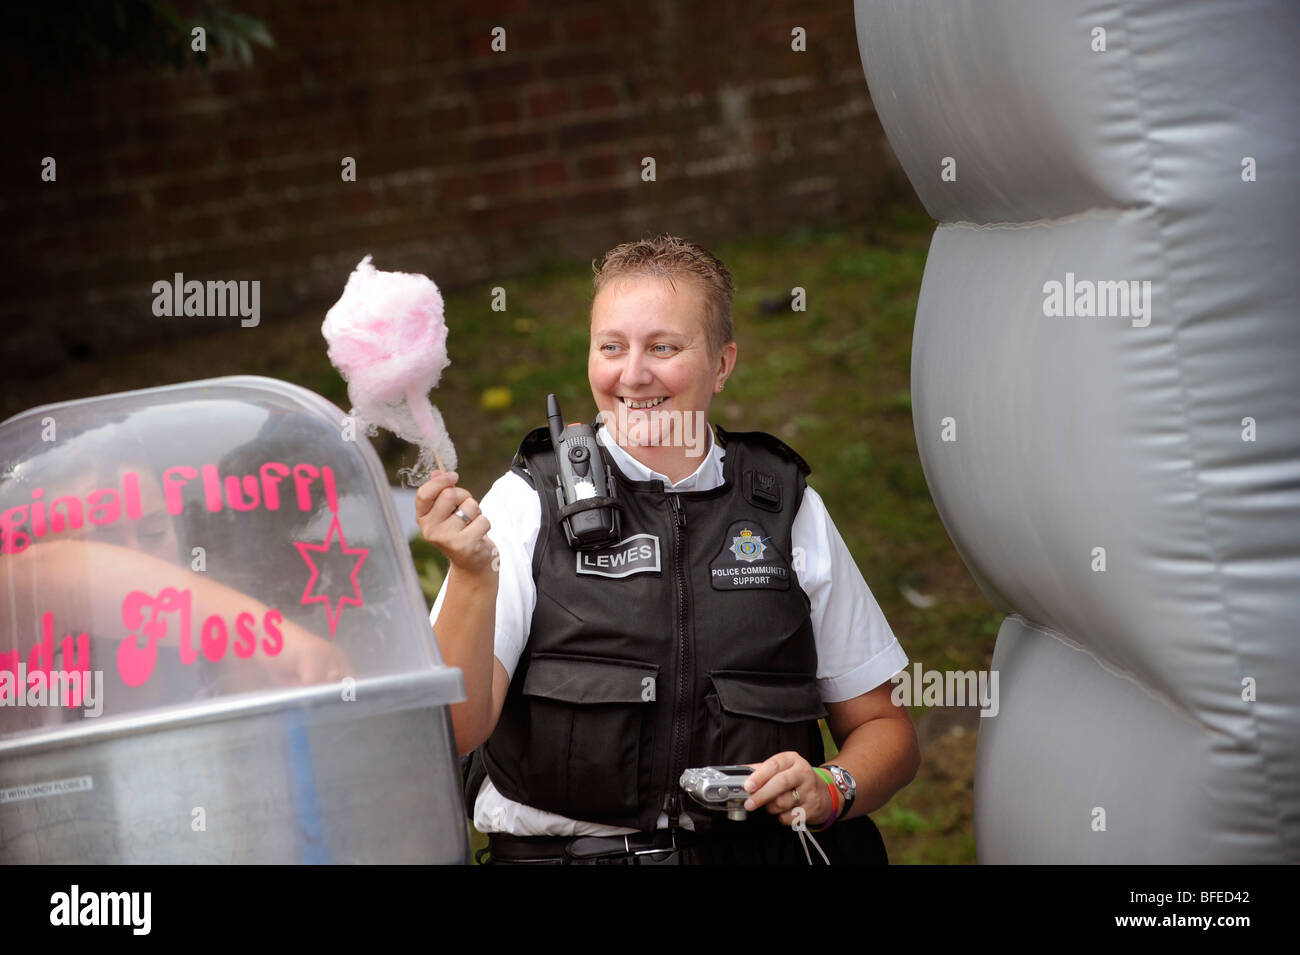 Una comunità di polizia support officer di ridere e azienda Candy Floss unisce il divertimento a una comunità evento estivo. Foto Stock